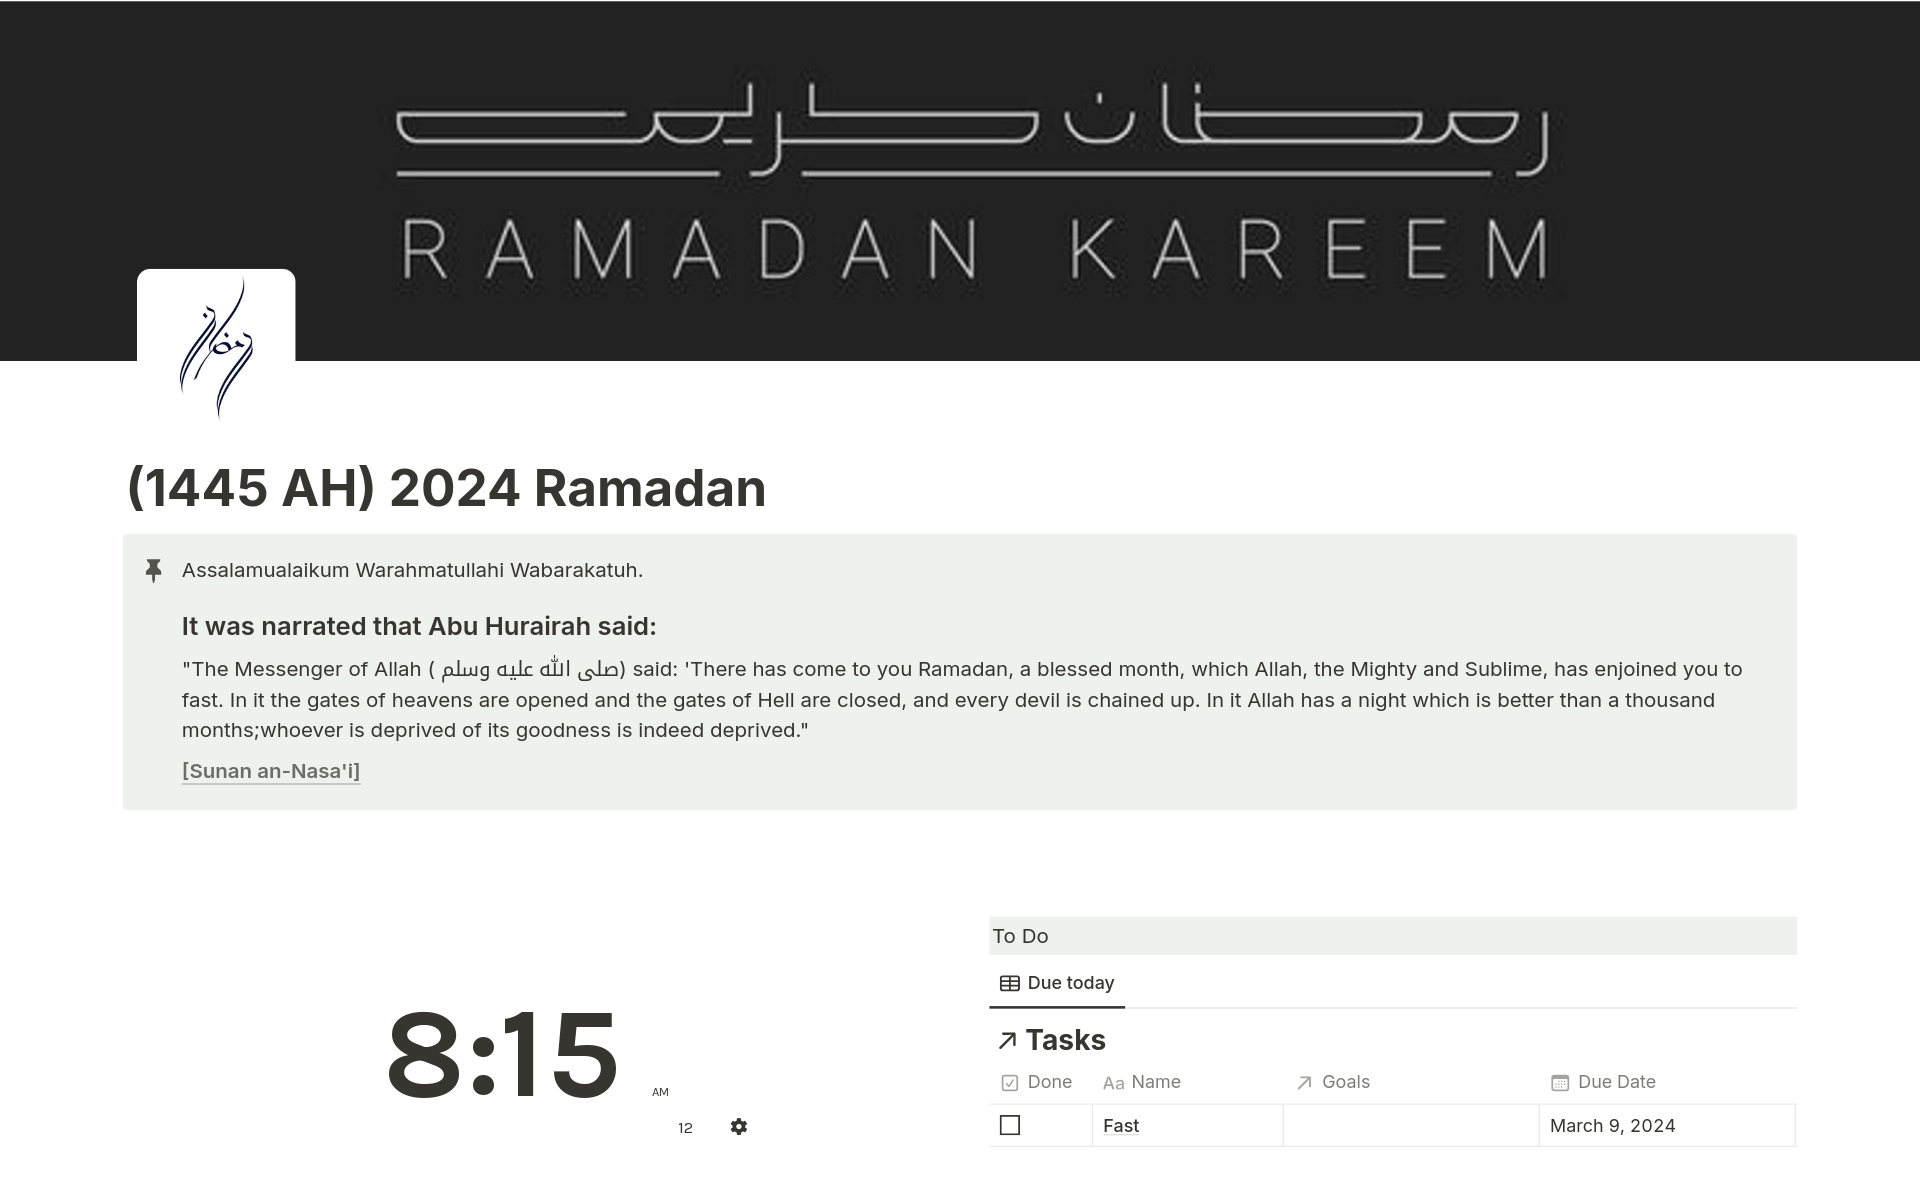 (1445 AH) 2024 Ramadan님의 템플릿 미리보기